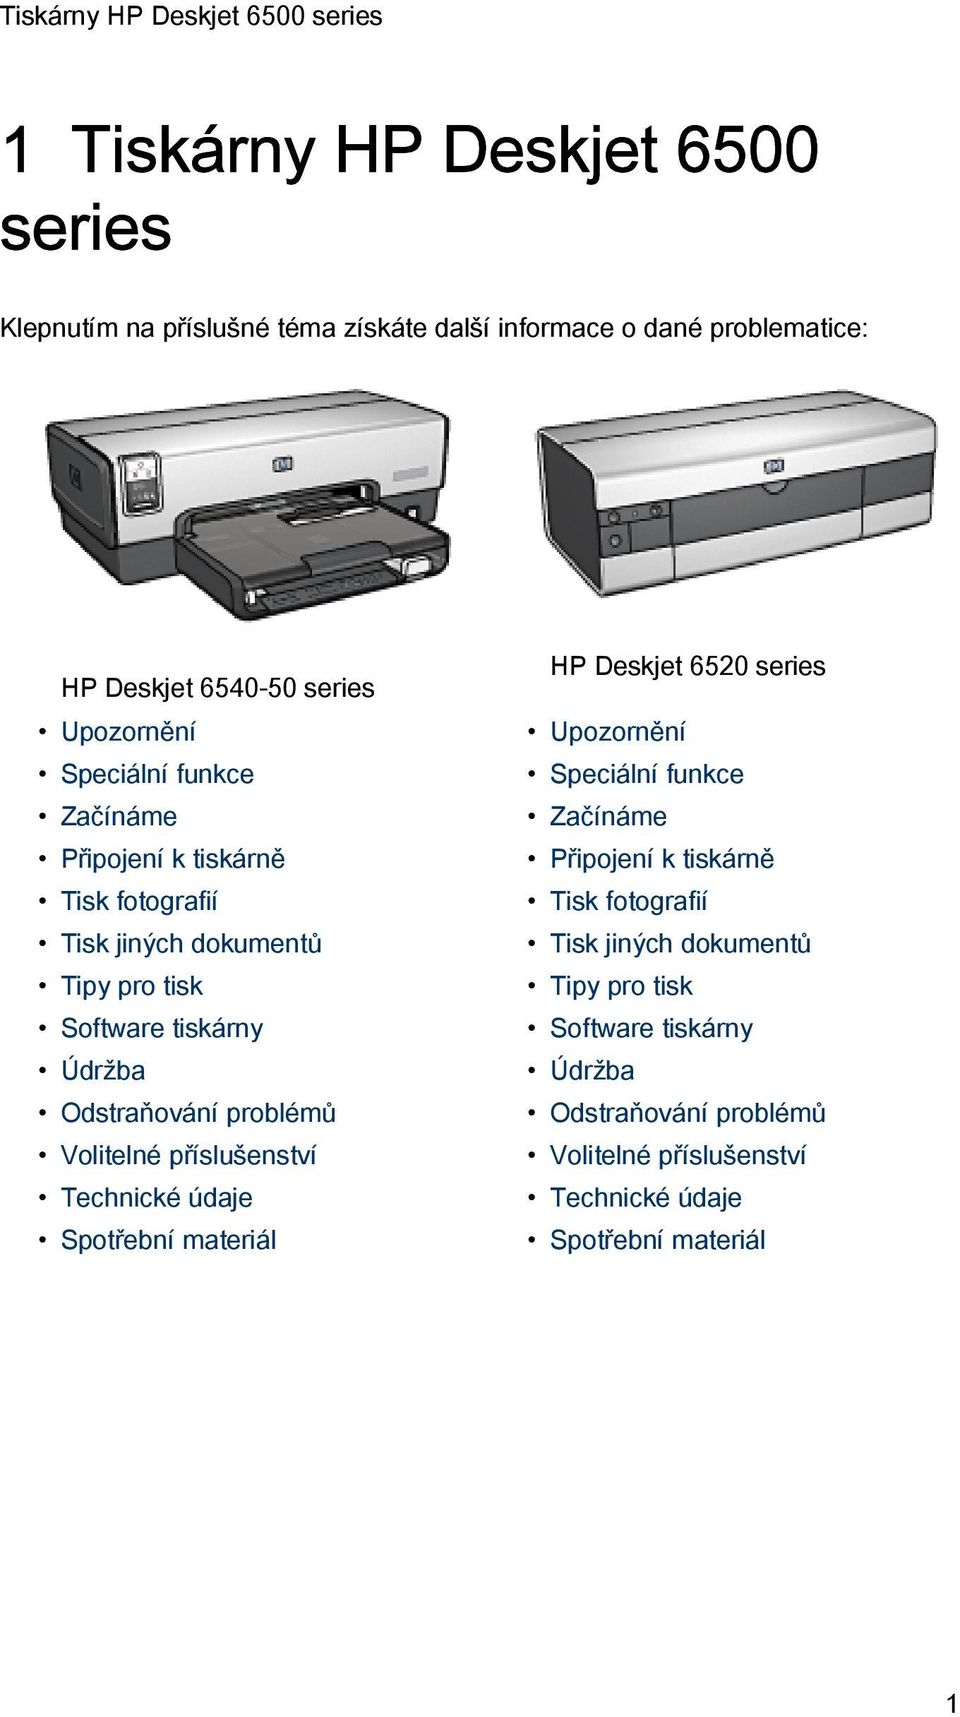 Volitelné příslušenství Technické údaje Spotřební materiál HP Deskjet 6520 series Upozornění  Volitelné příslušenství Technické údaje Spotřební